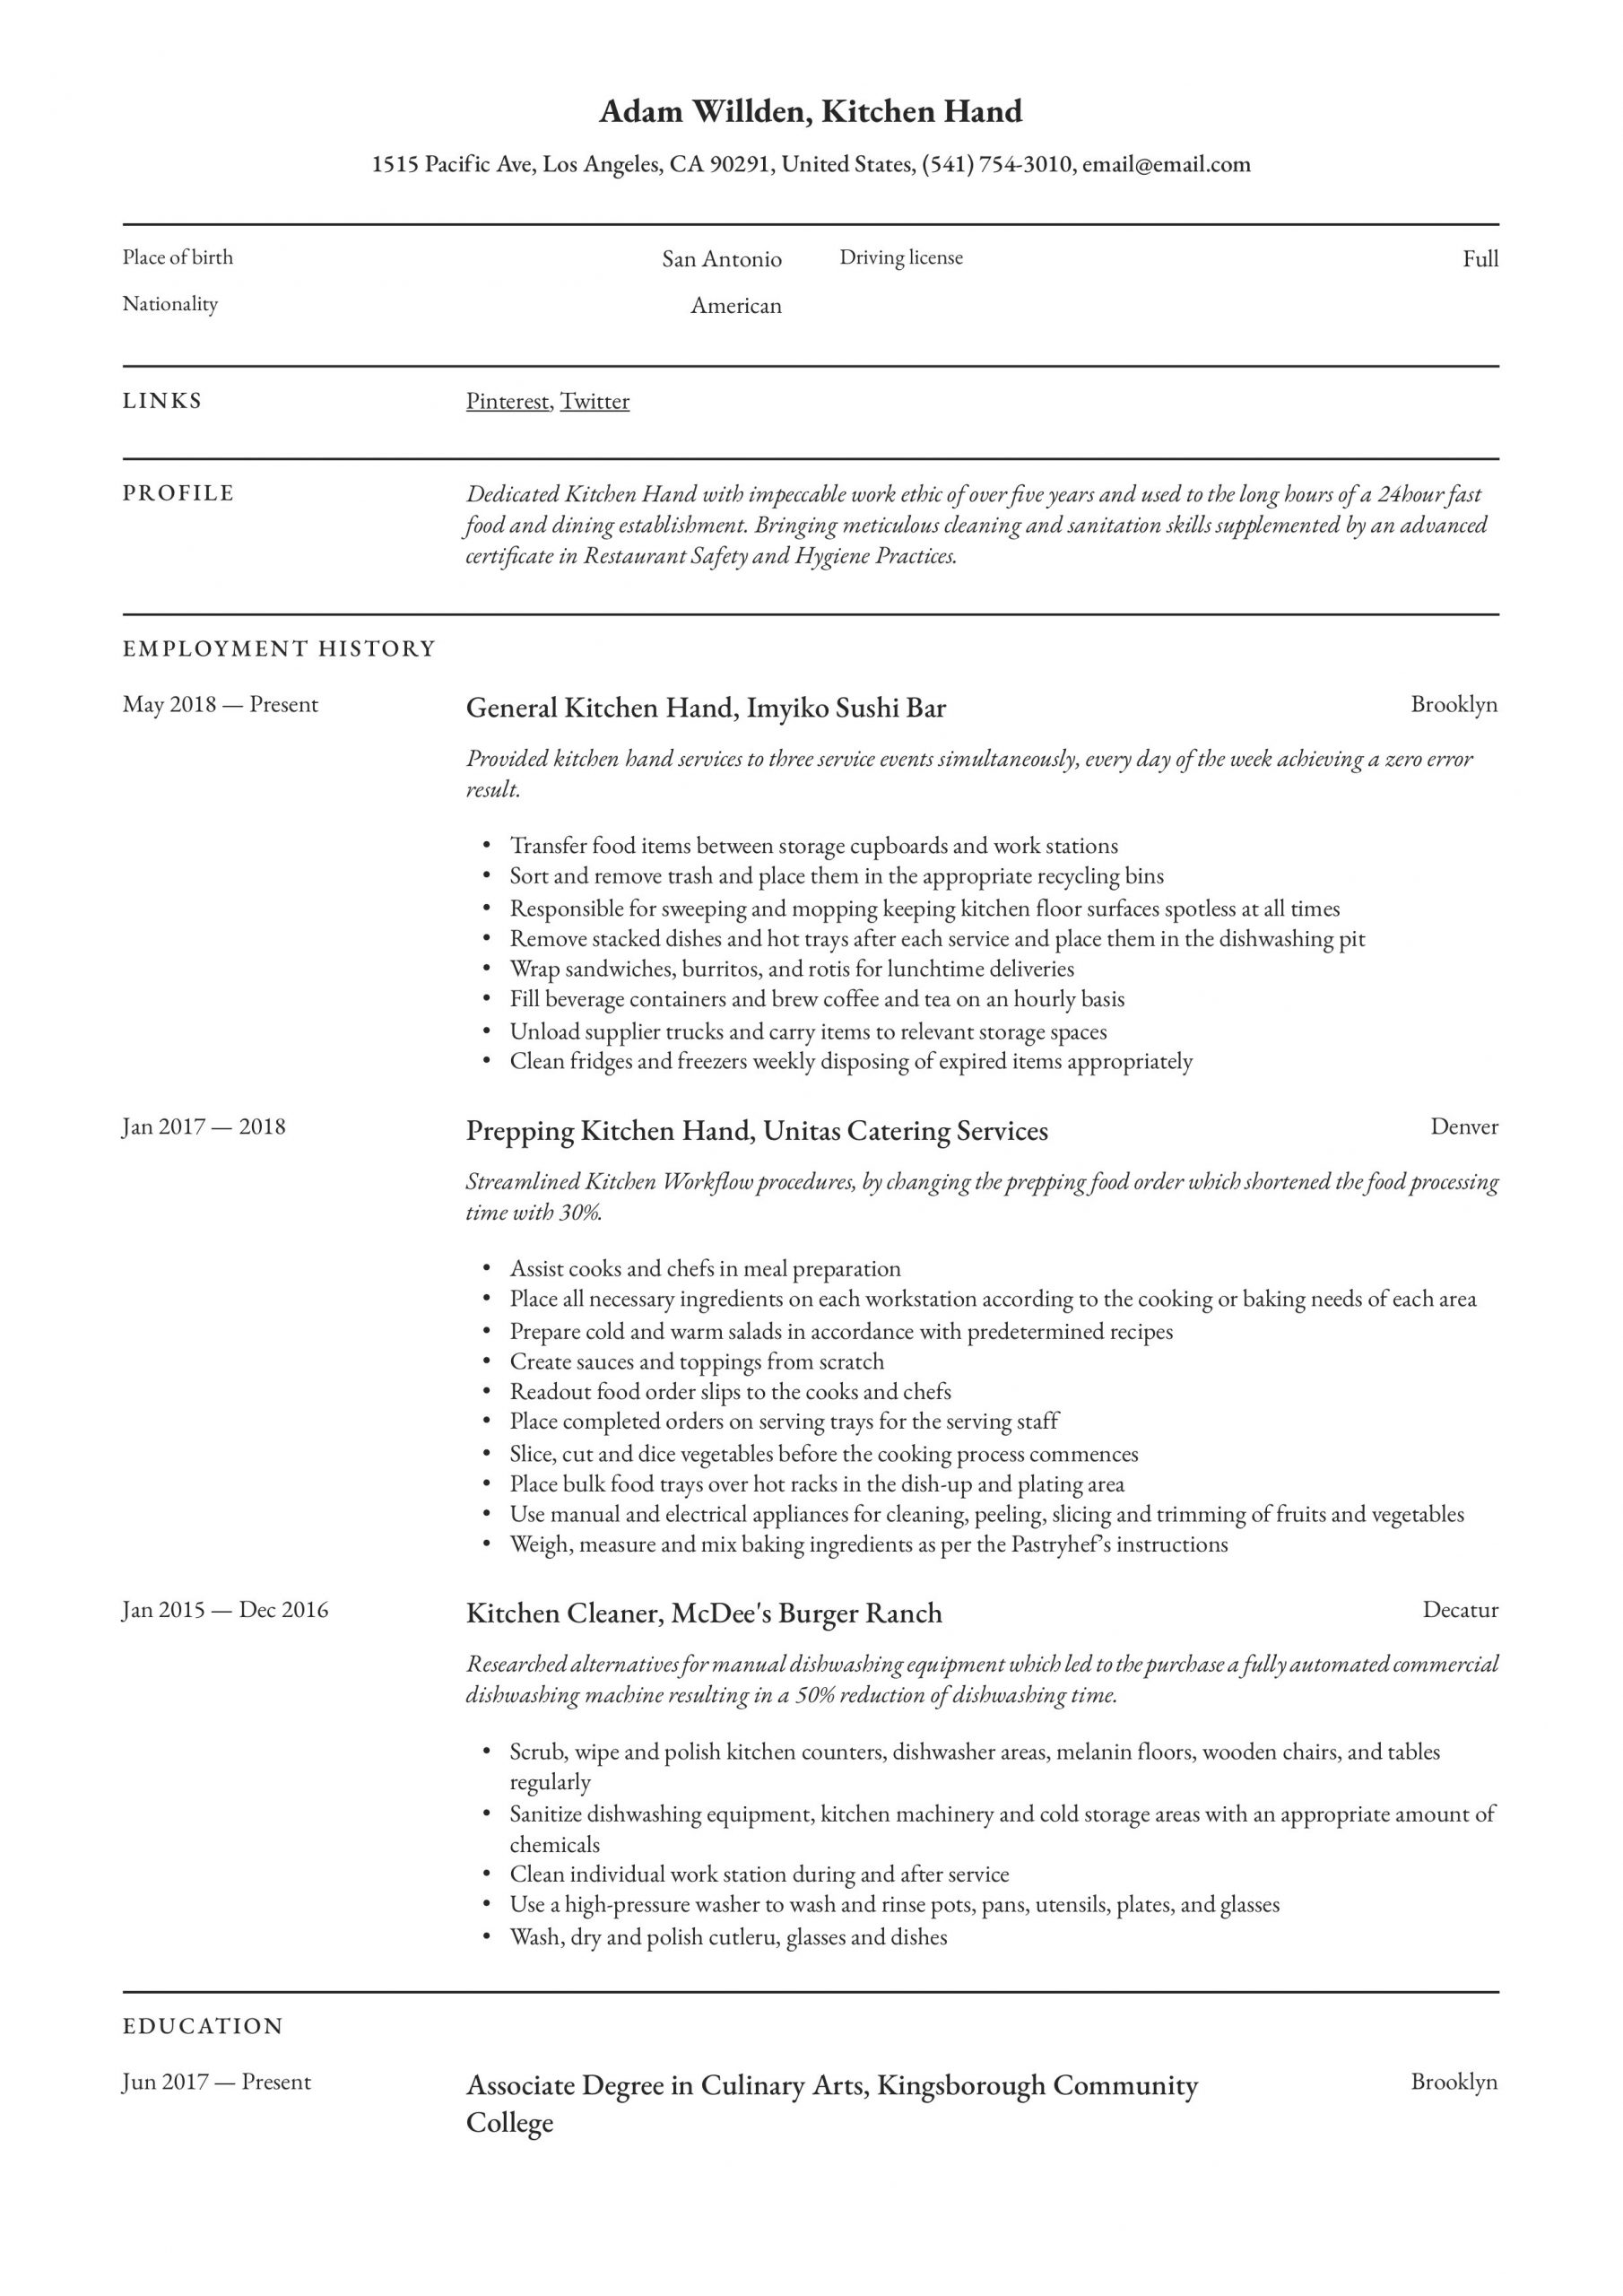 Sample Resume for Restaurant Kitchen Hand Kitchen Hand Resume – Derel